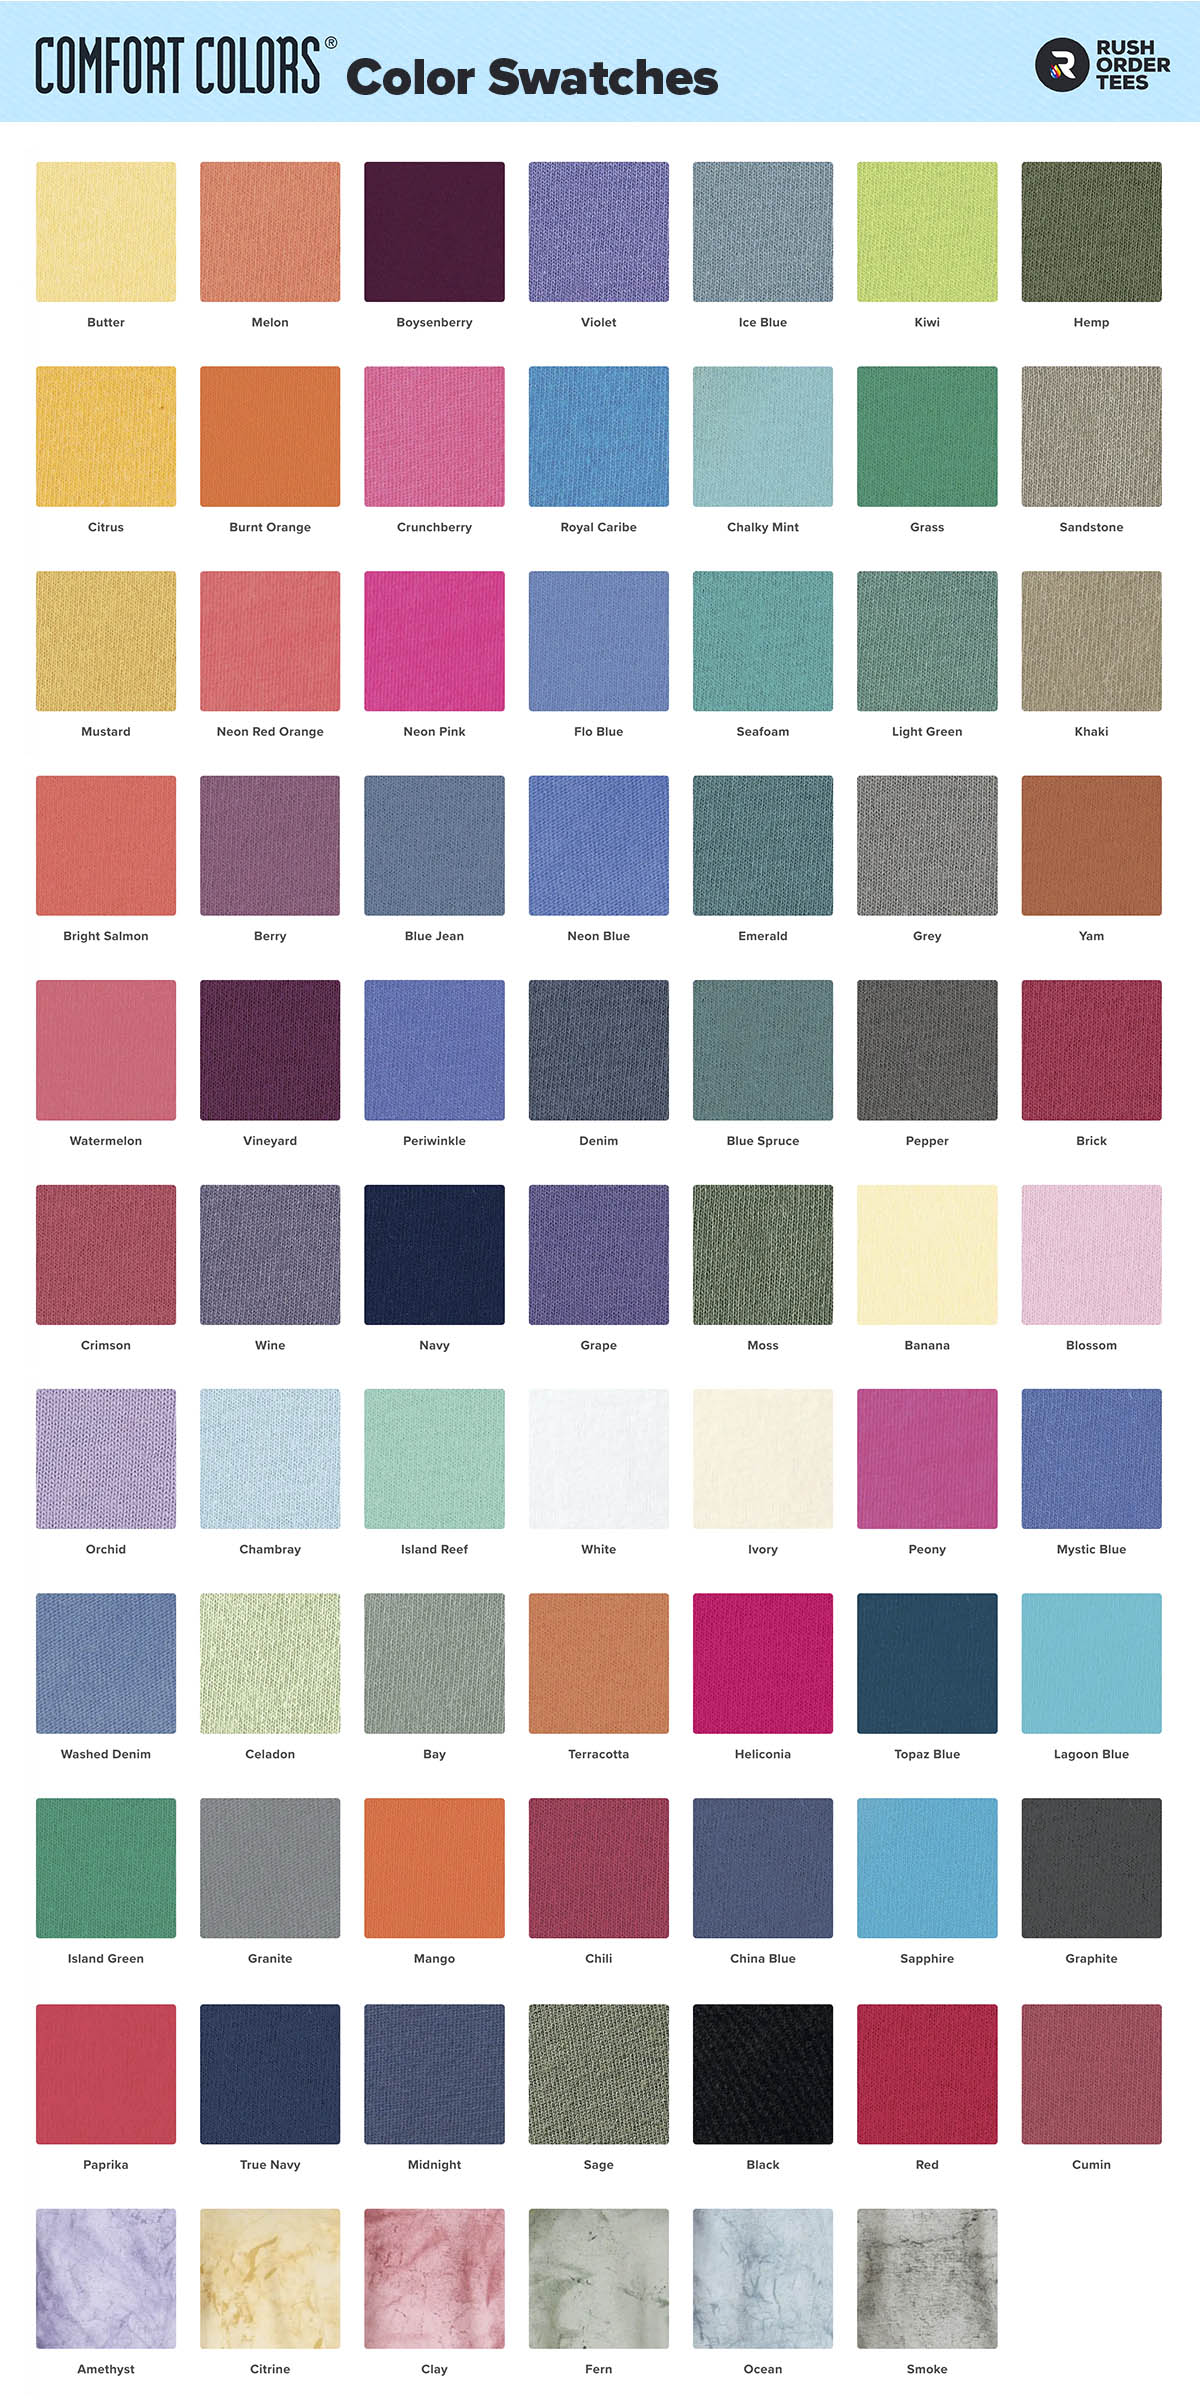 Gildan vs. Comfort Colors